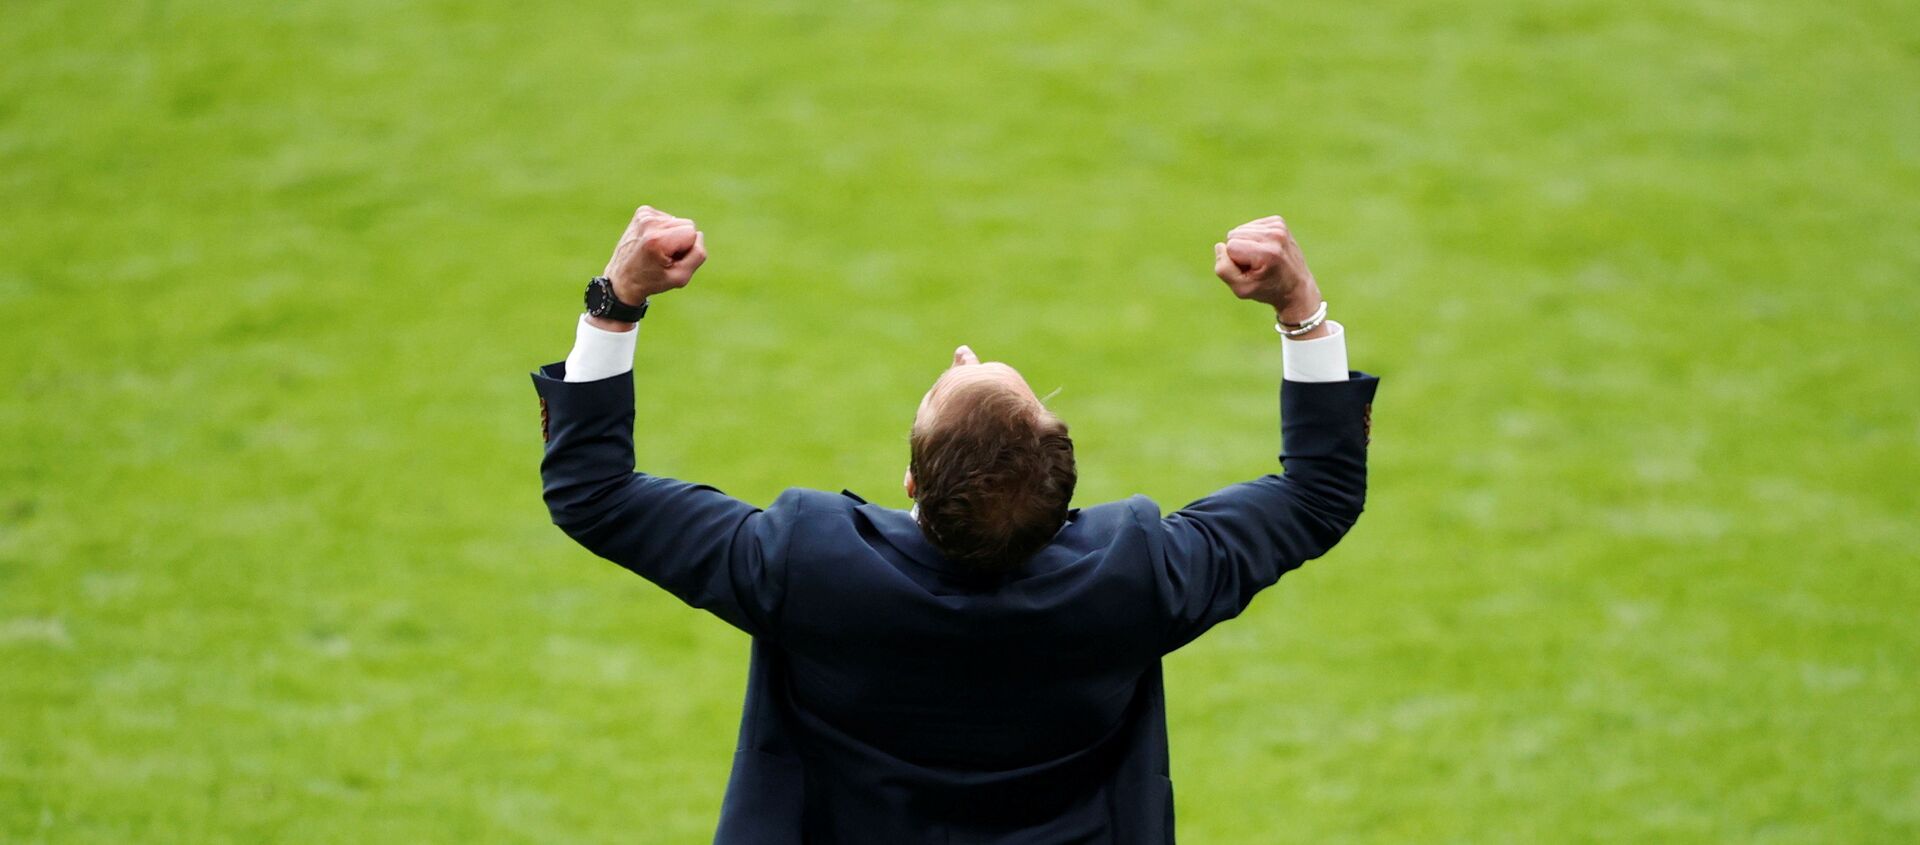 Trận đấu thuộc vòng 16 Euro 2020 - Huấn luyện viên đội tuyển Anh Gareth Southgate ăn mừng chiến thắng của đội tuyển trước Đức tại sân vận động Wembley ở London, Anh ngày 29 tháng 6 năm 2021 - Sputnik Việt Nam, 1920, 02.07.2021